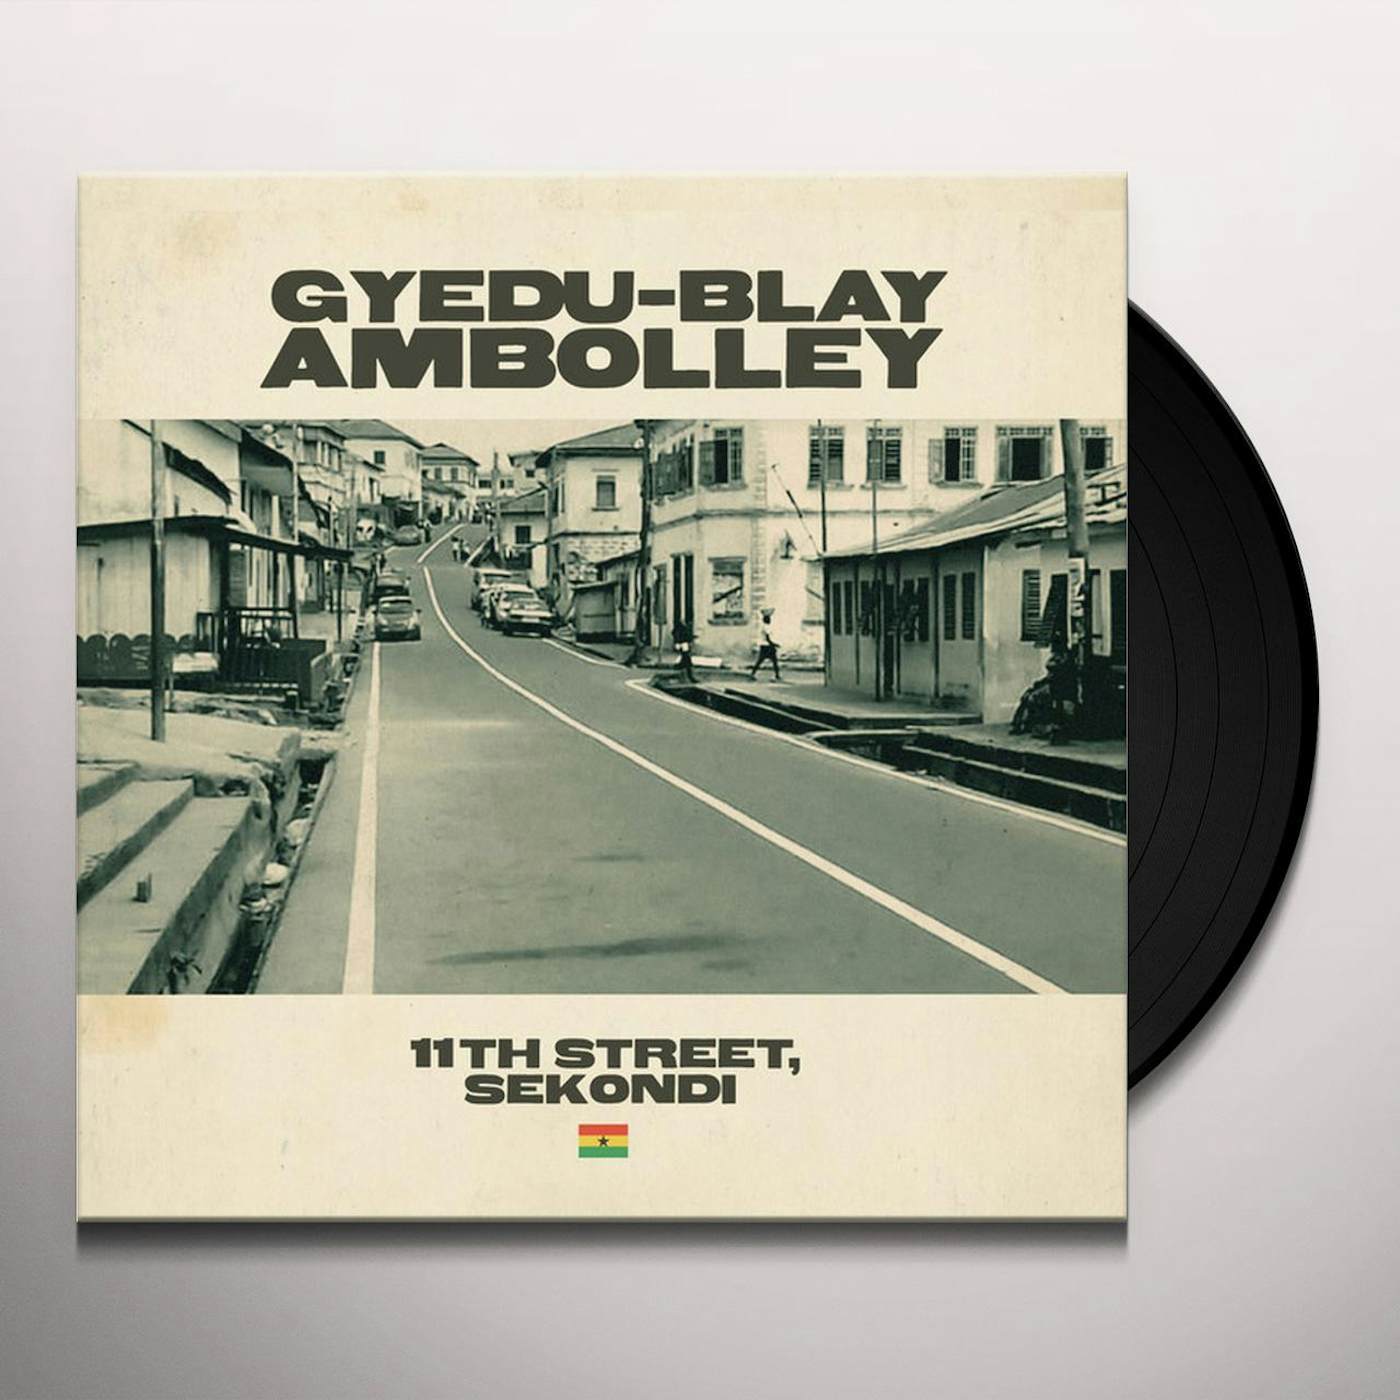 Gyedu-Blay Ambolley 11TH STREET SEKONDI Vinyl Record